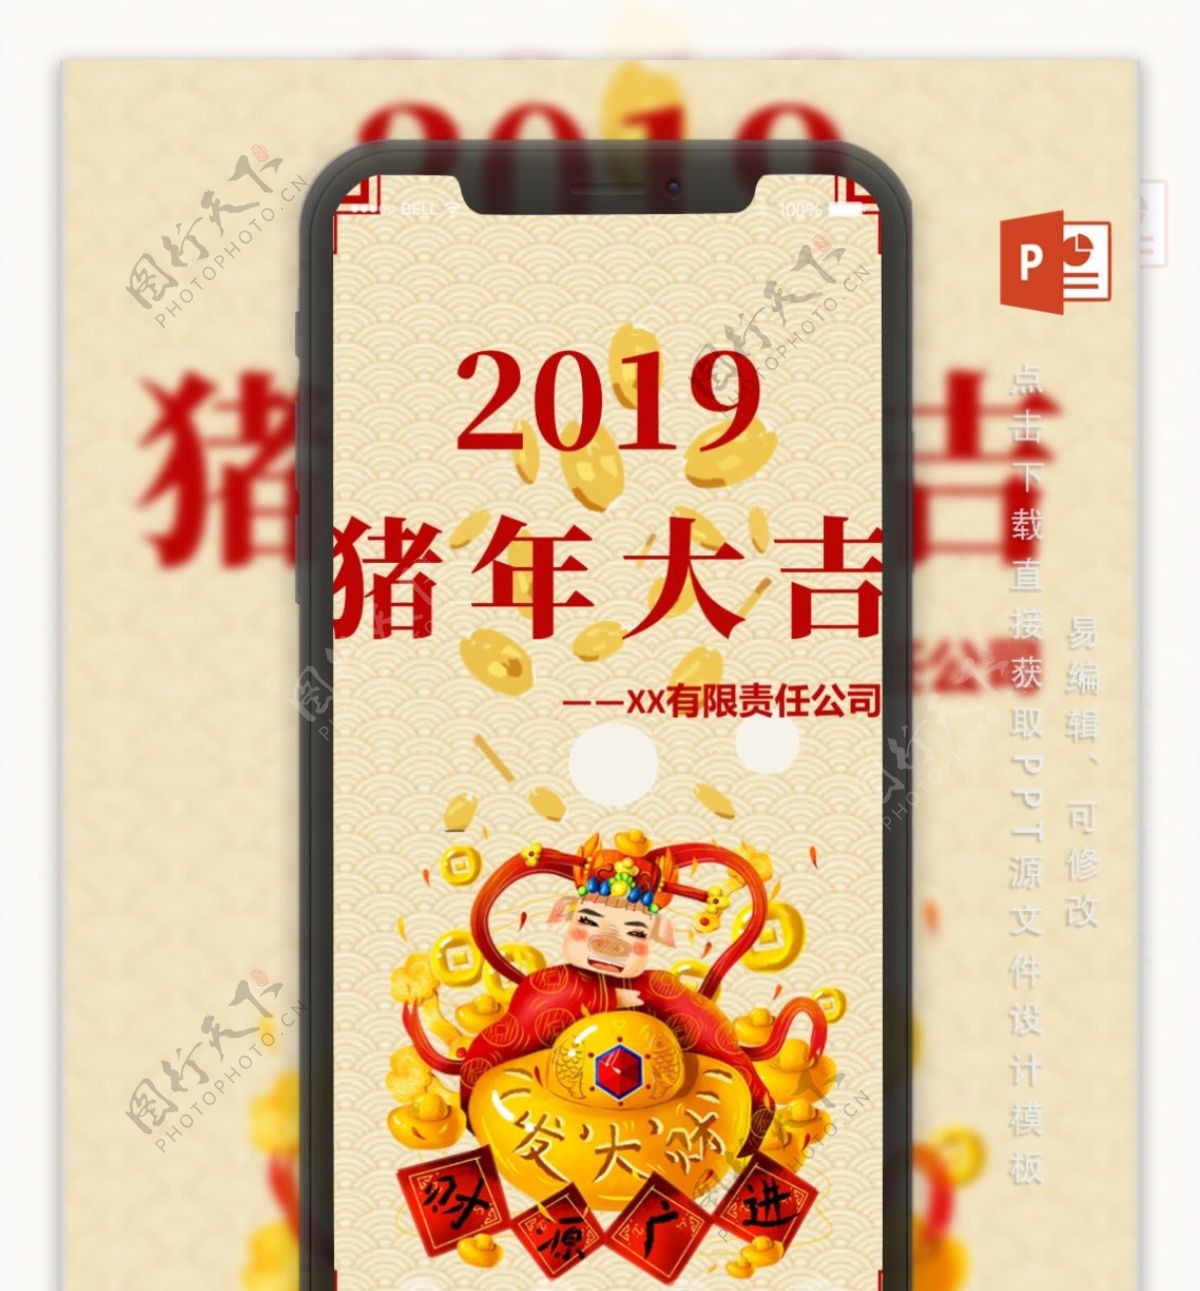 2019企业祝福猪年电子贺卡PPT模板